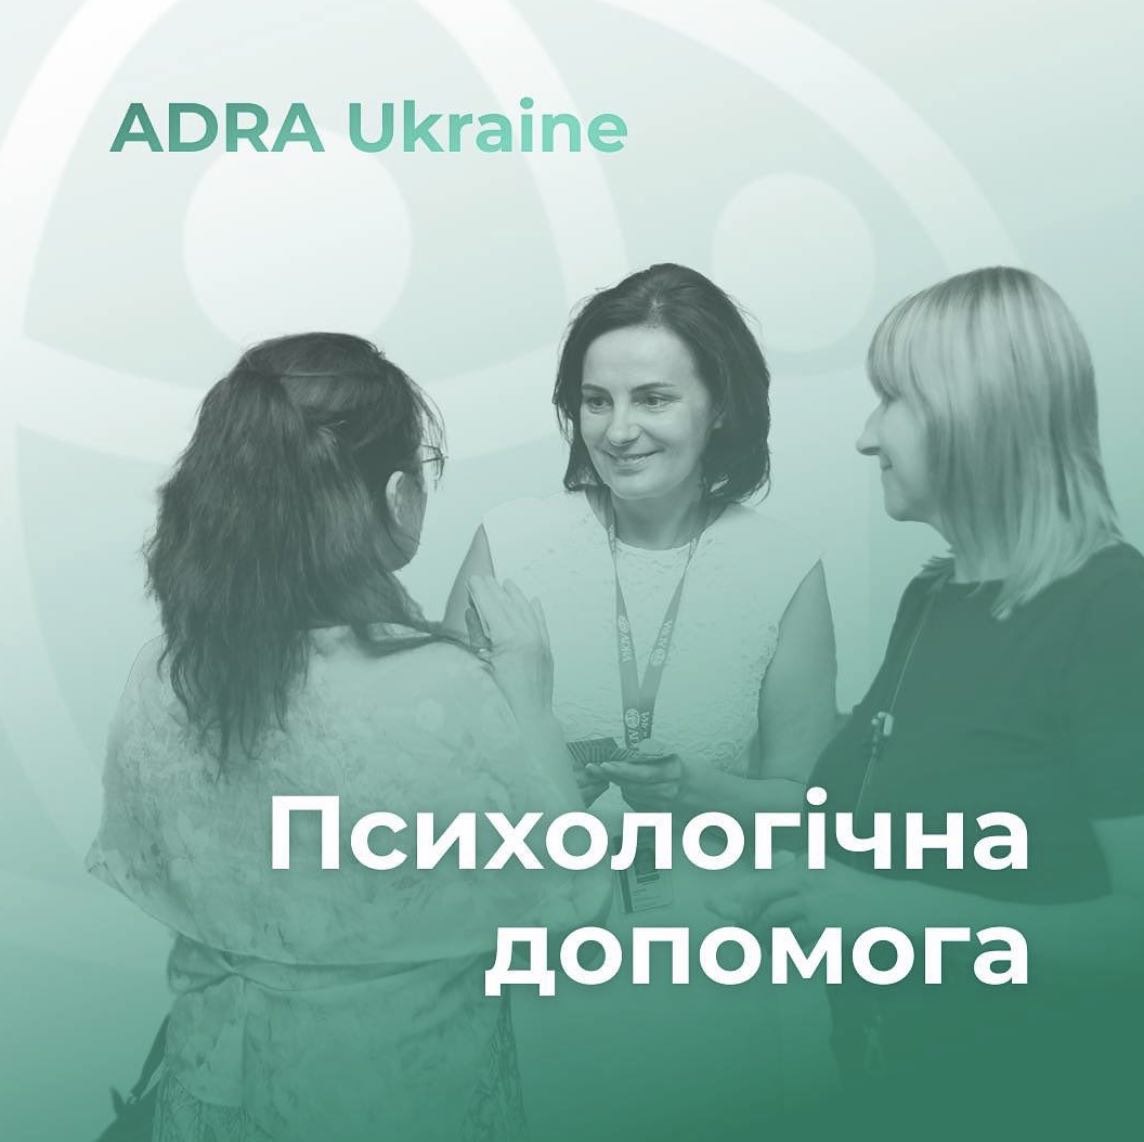 Методи самозаспокоєння під час повітряних тривог: практичні поради від психолога ADRA Ukraine